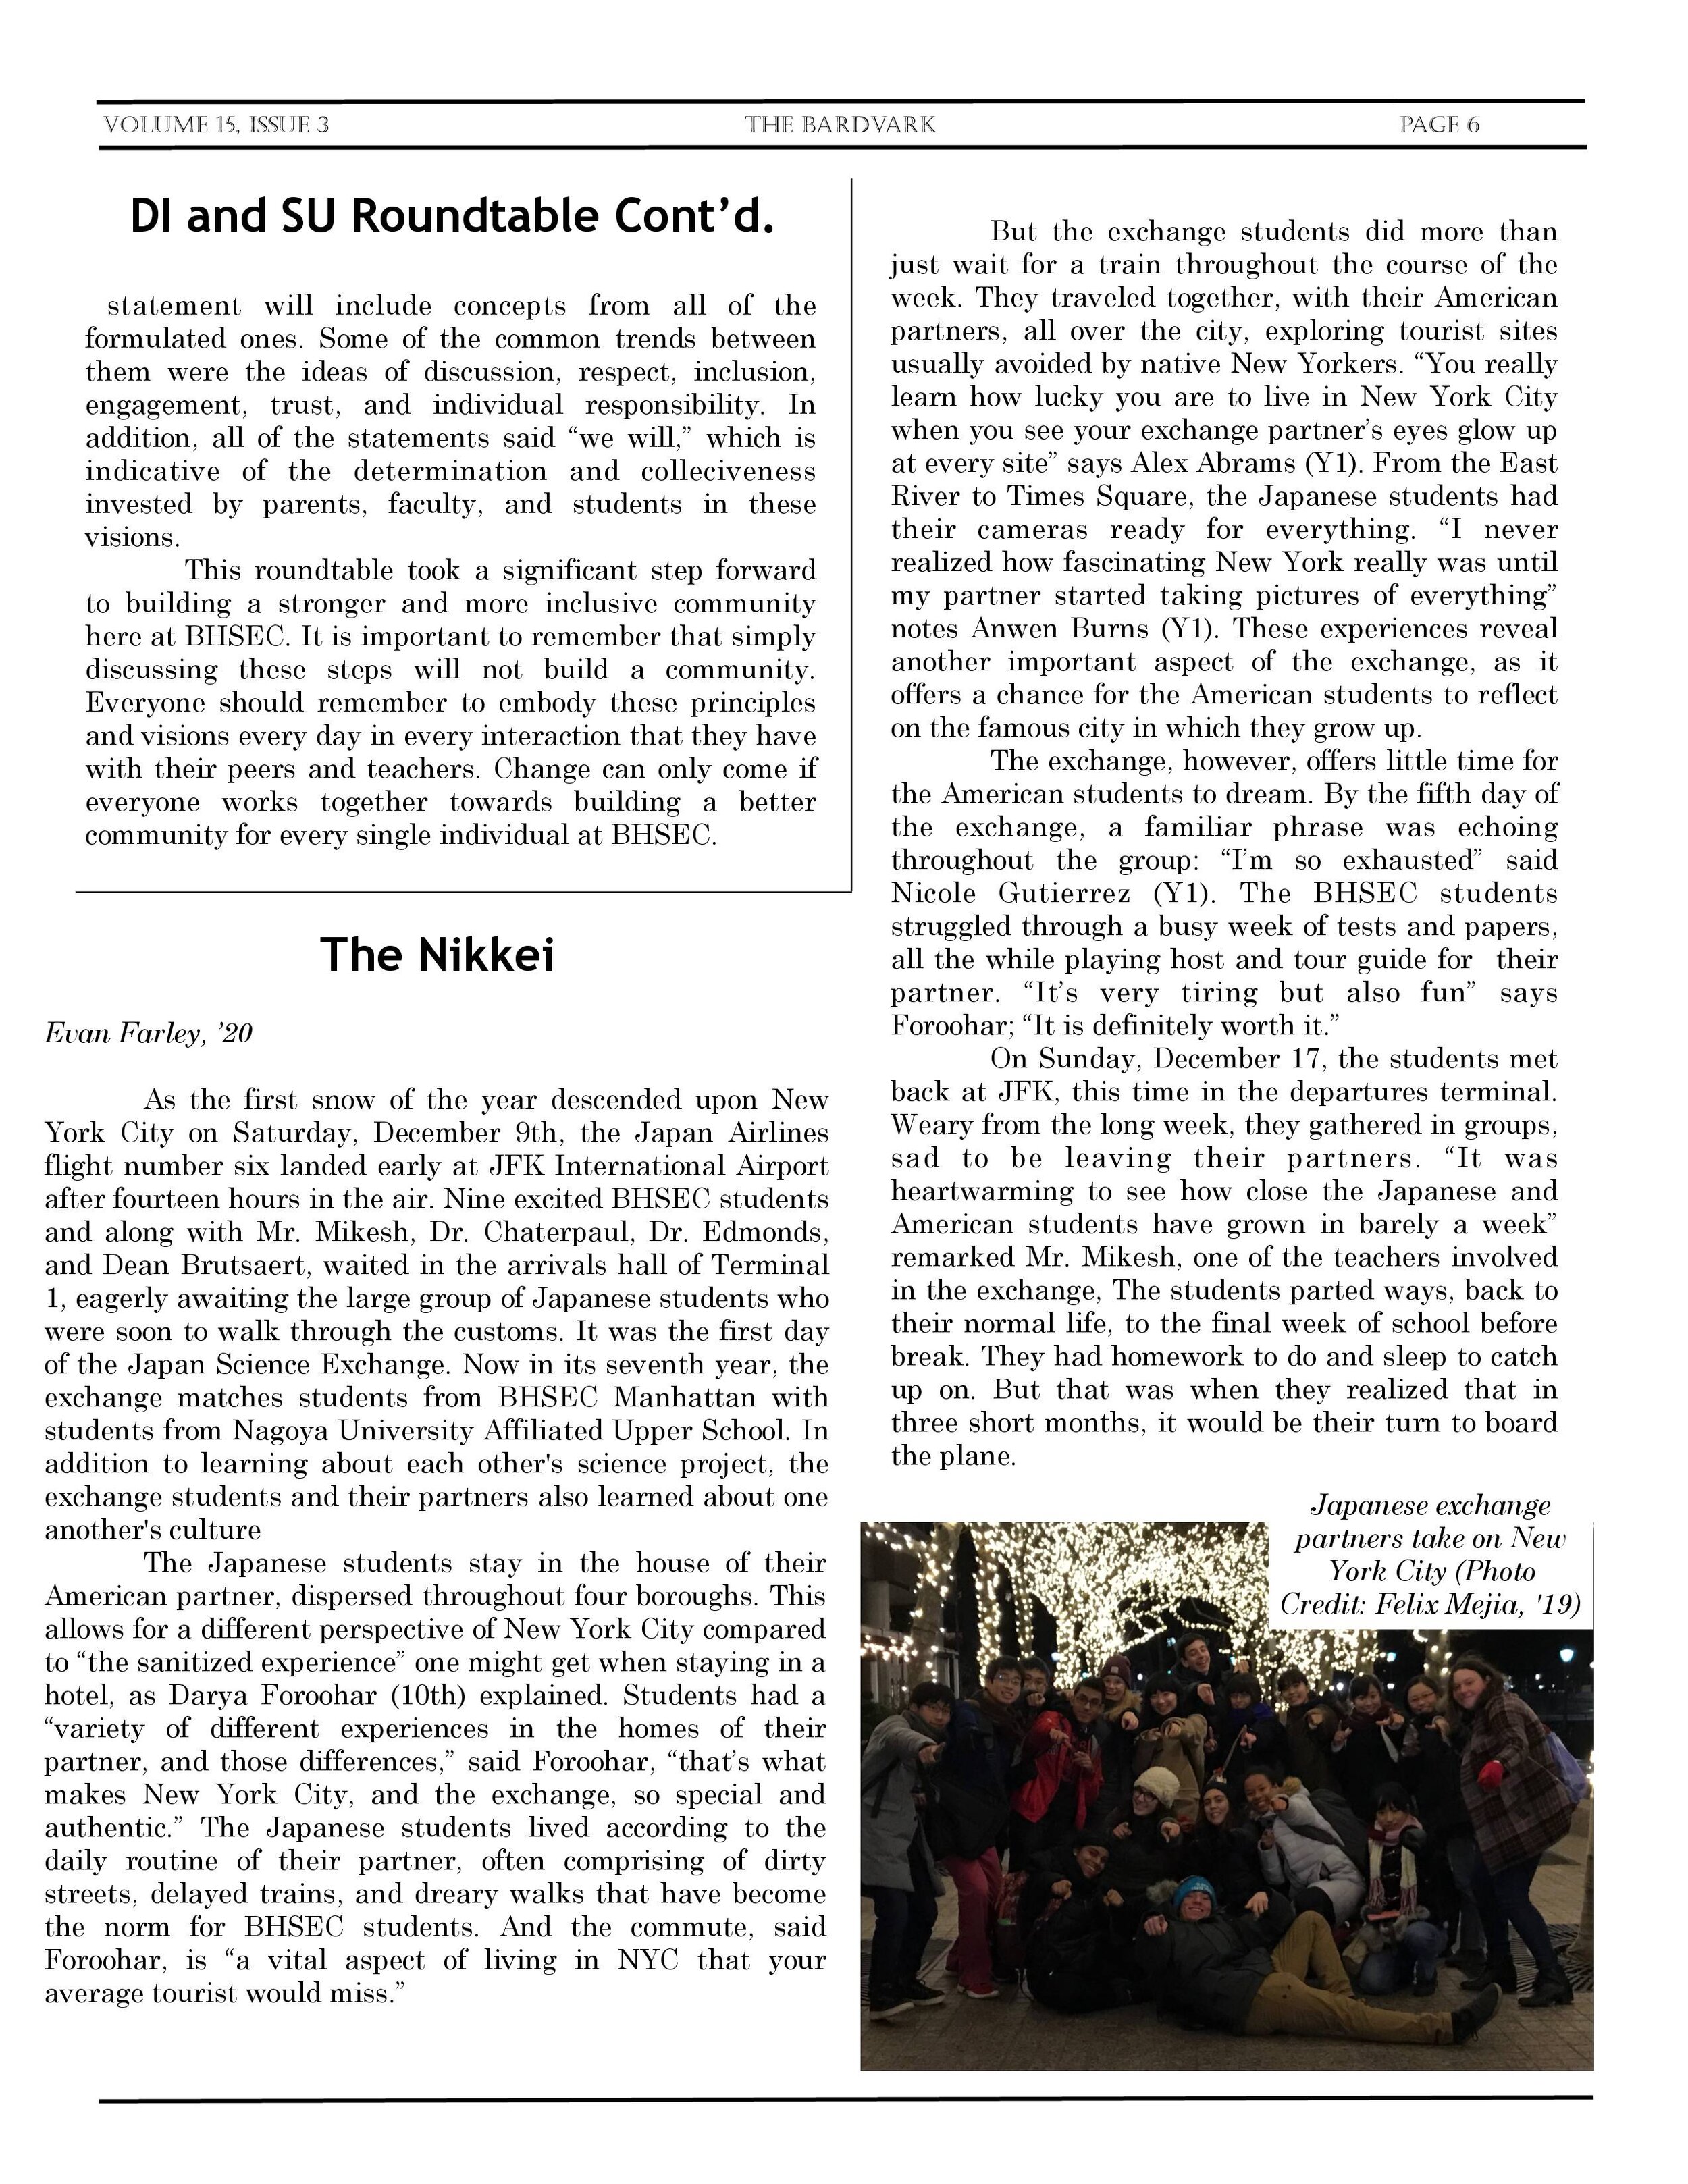 Bardvark Vol 15 Issue 3-6.jpg